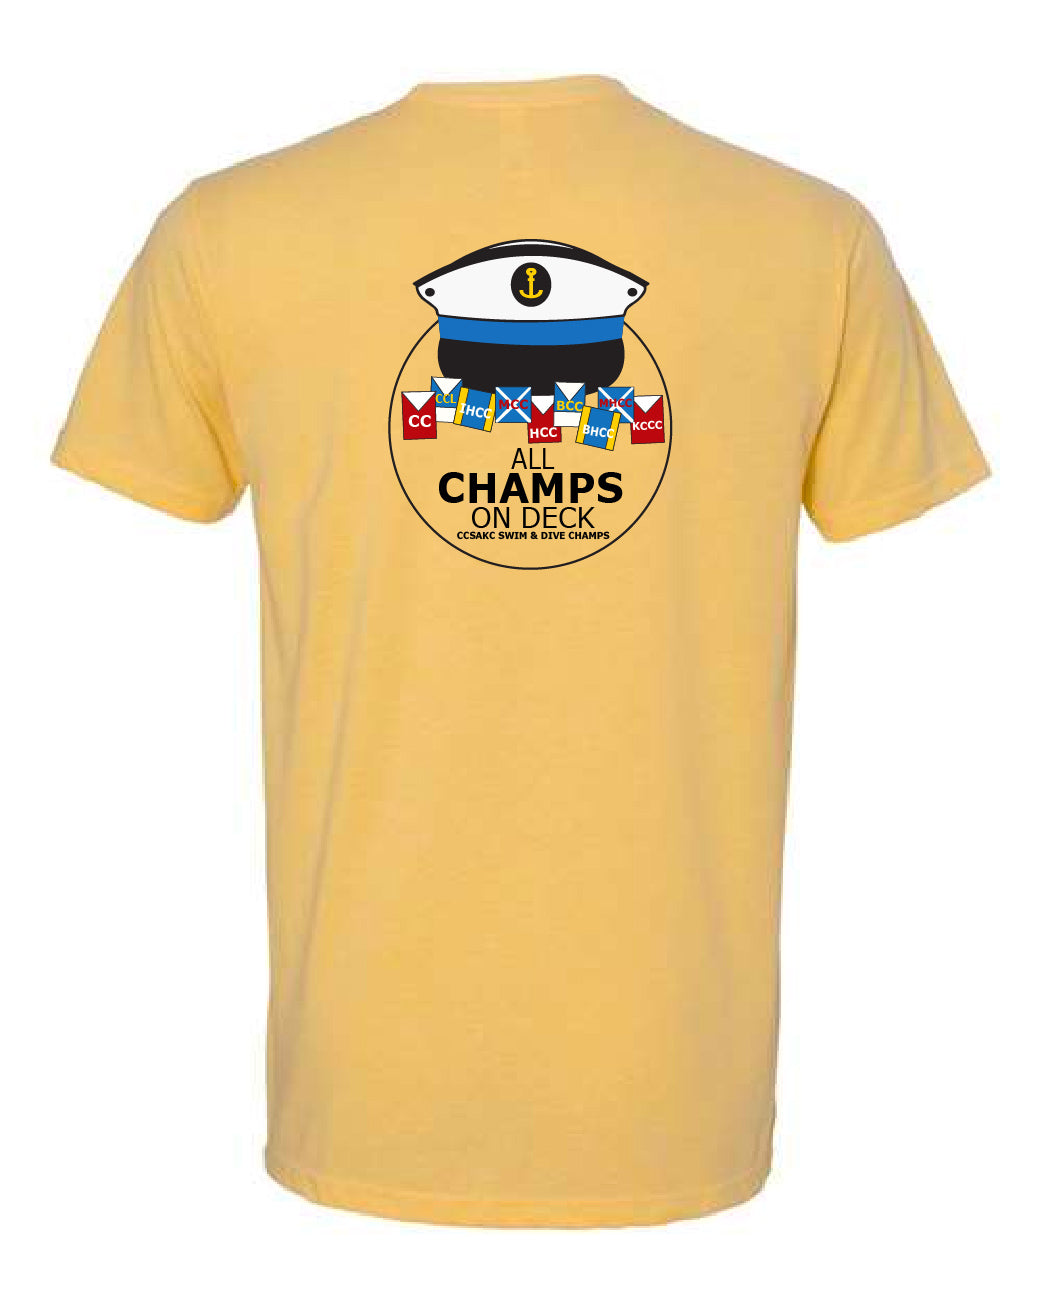 Champs Left Chest T-Shirt